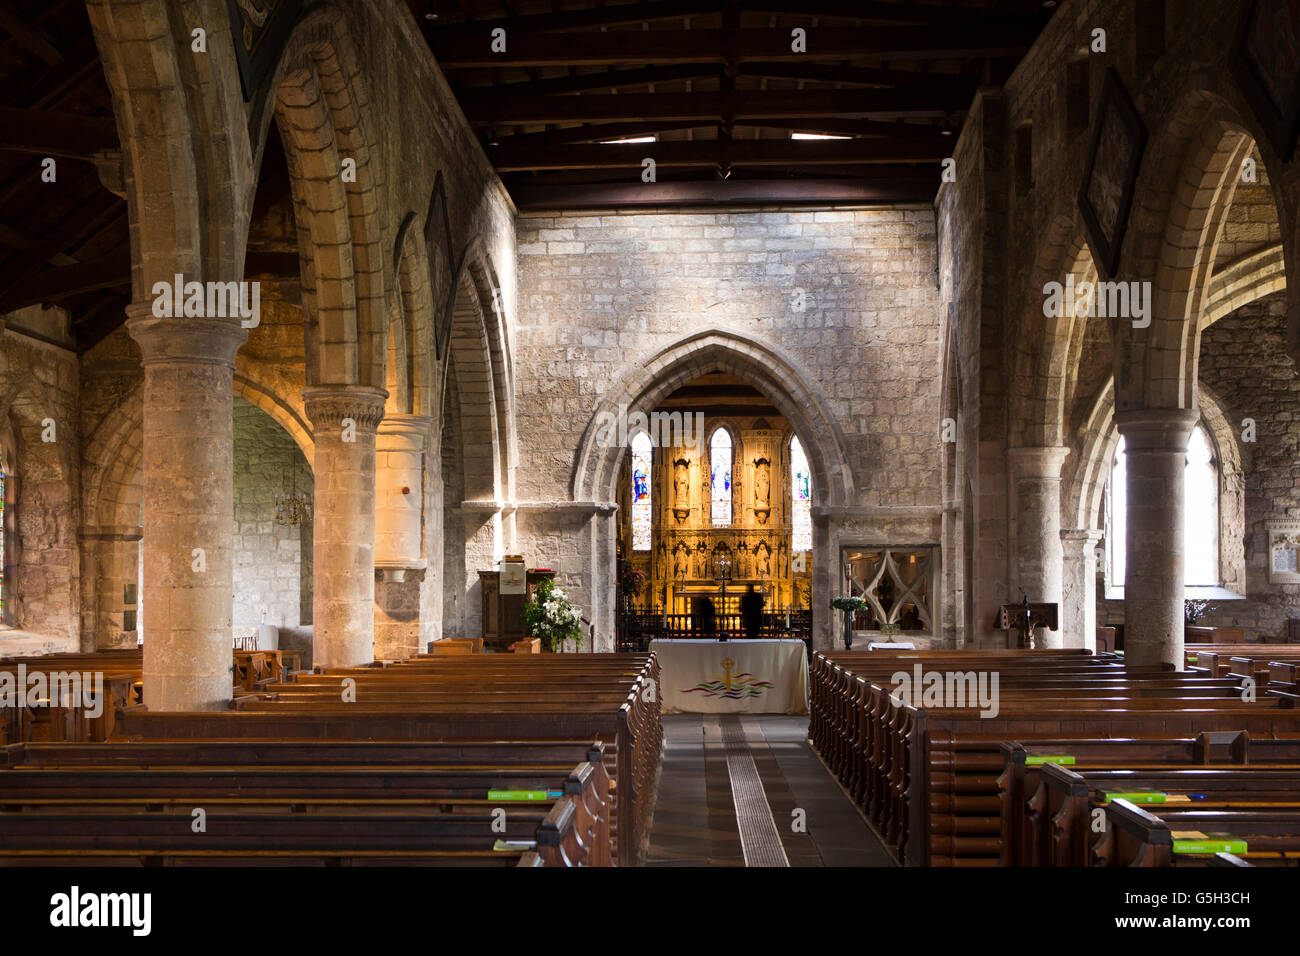 Großbritannien, England Northumberland, Bamburgh, Pfarrkirche, Interieur, Langhaus, Chor Altar und Retabel Stockfoto